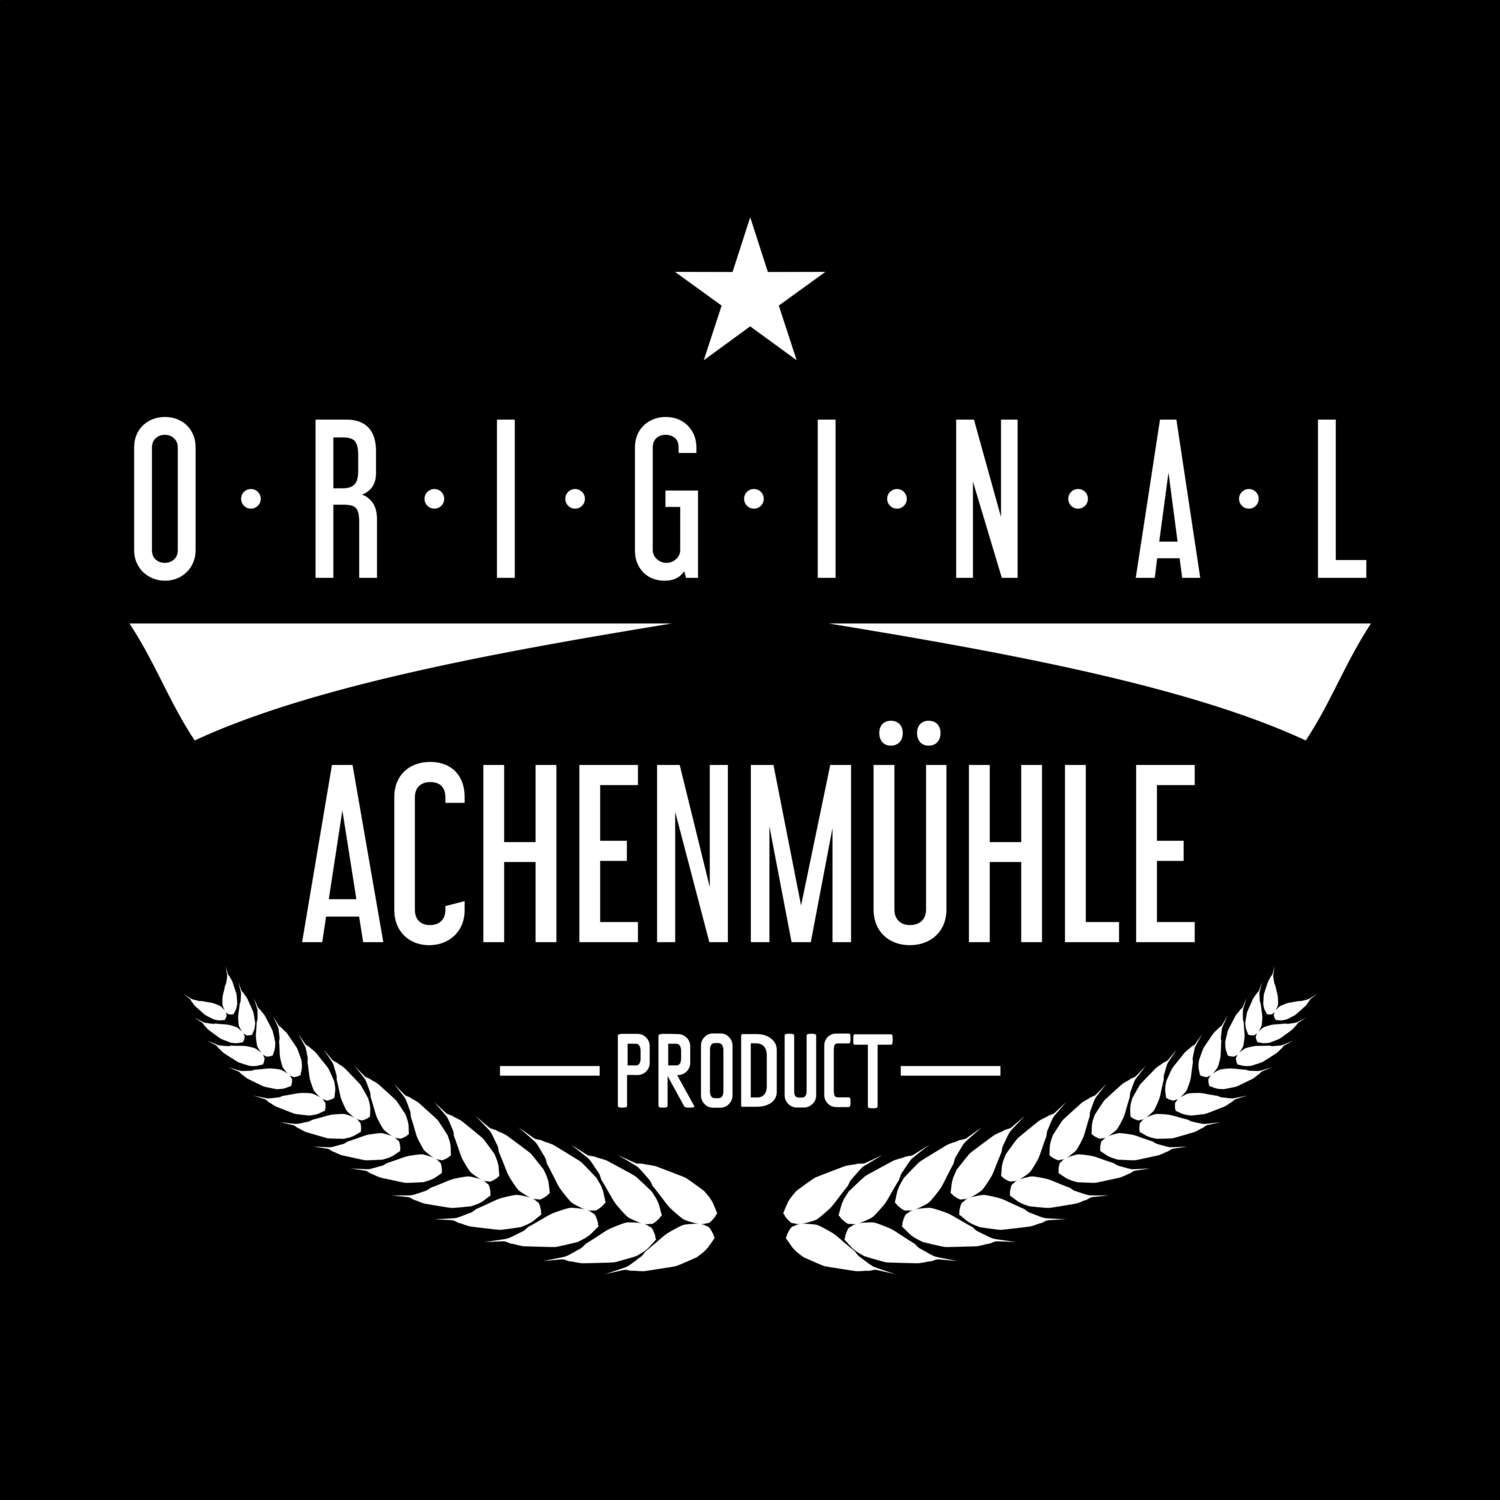 Achenmühle T-Shirt »Original Product«